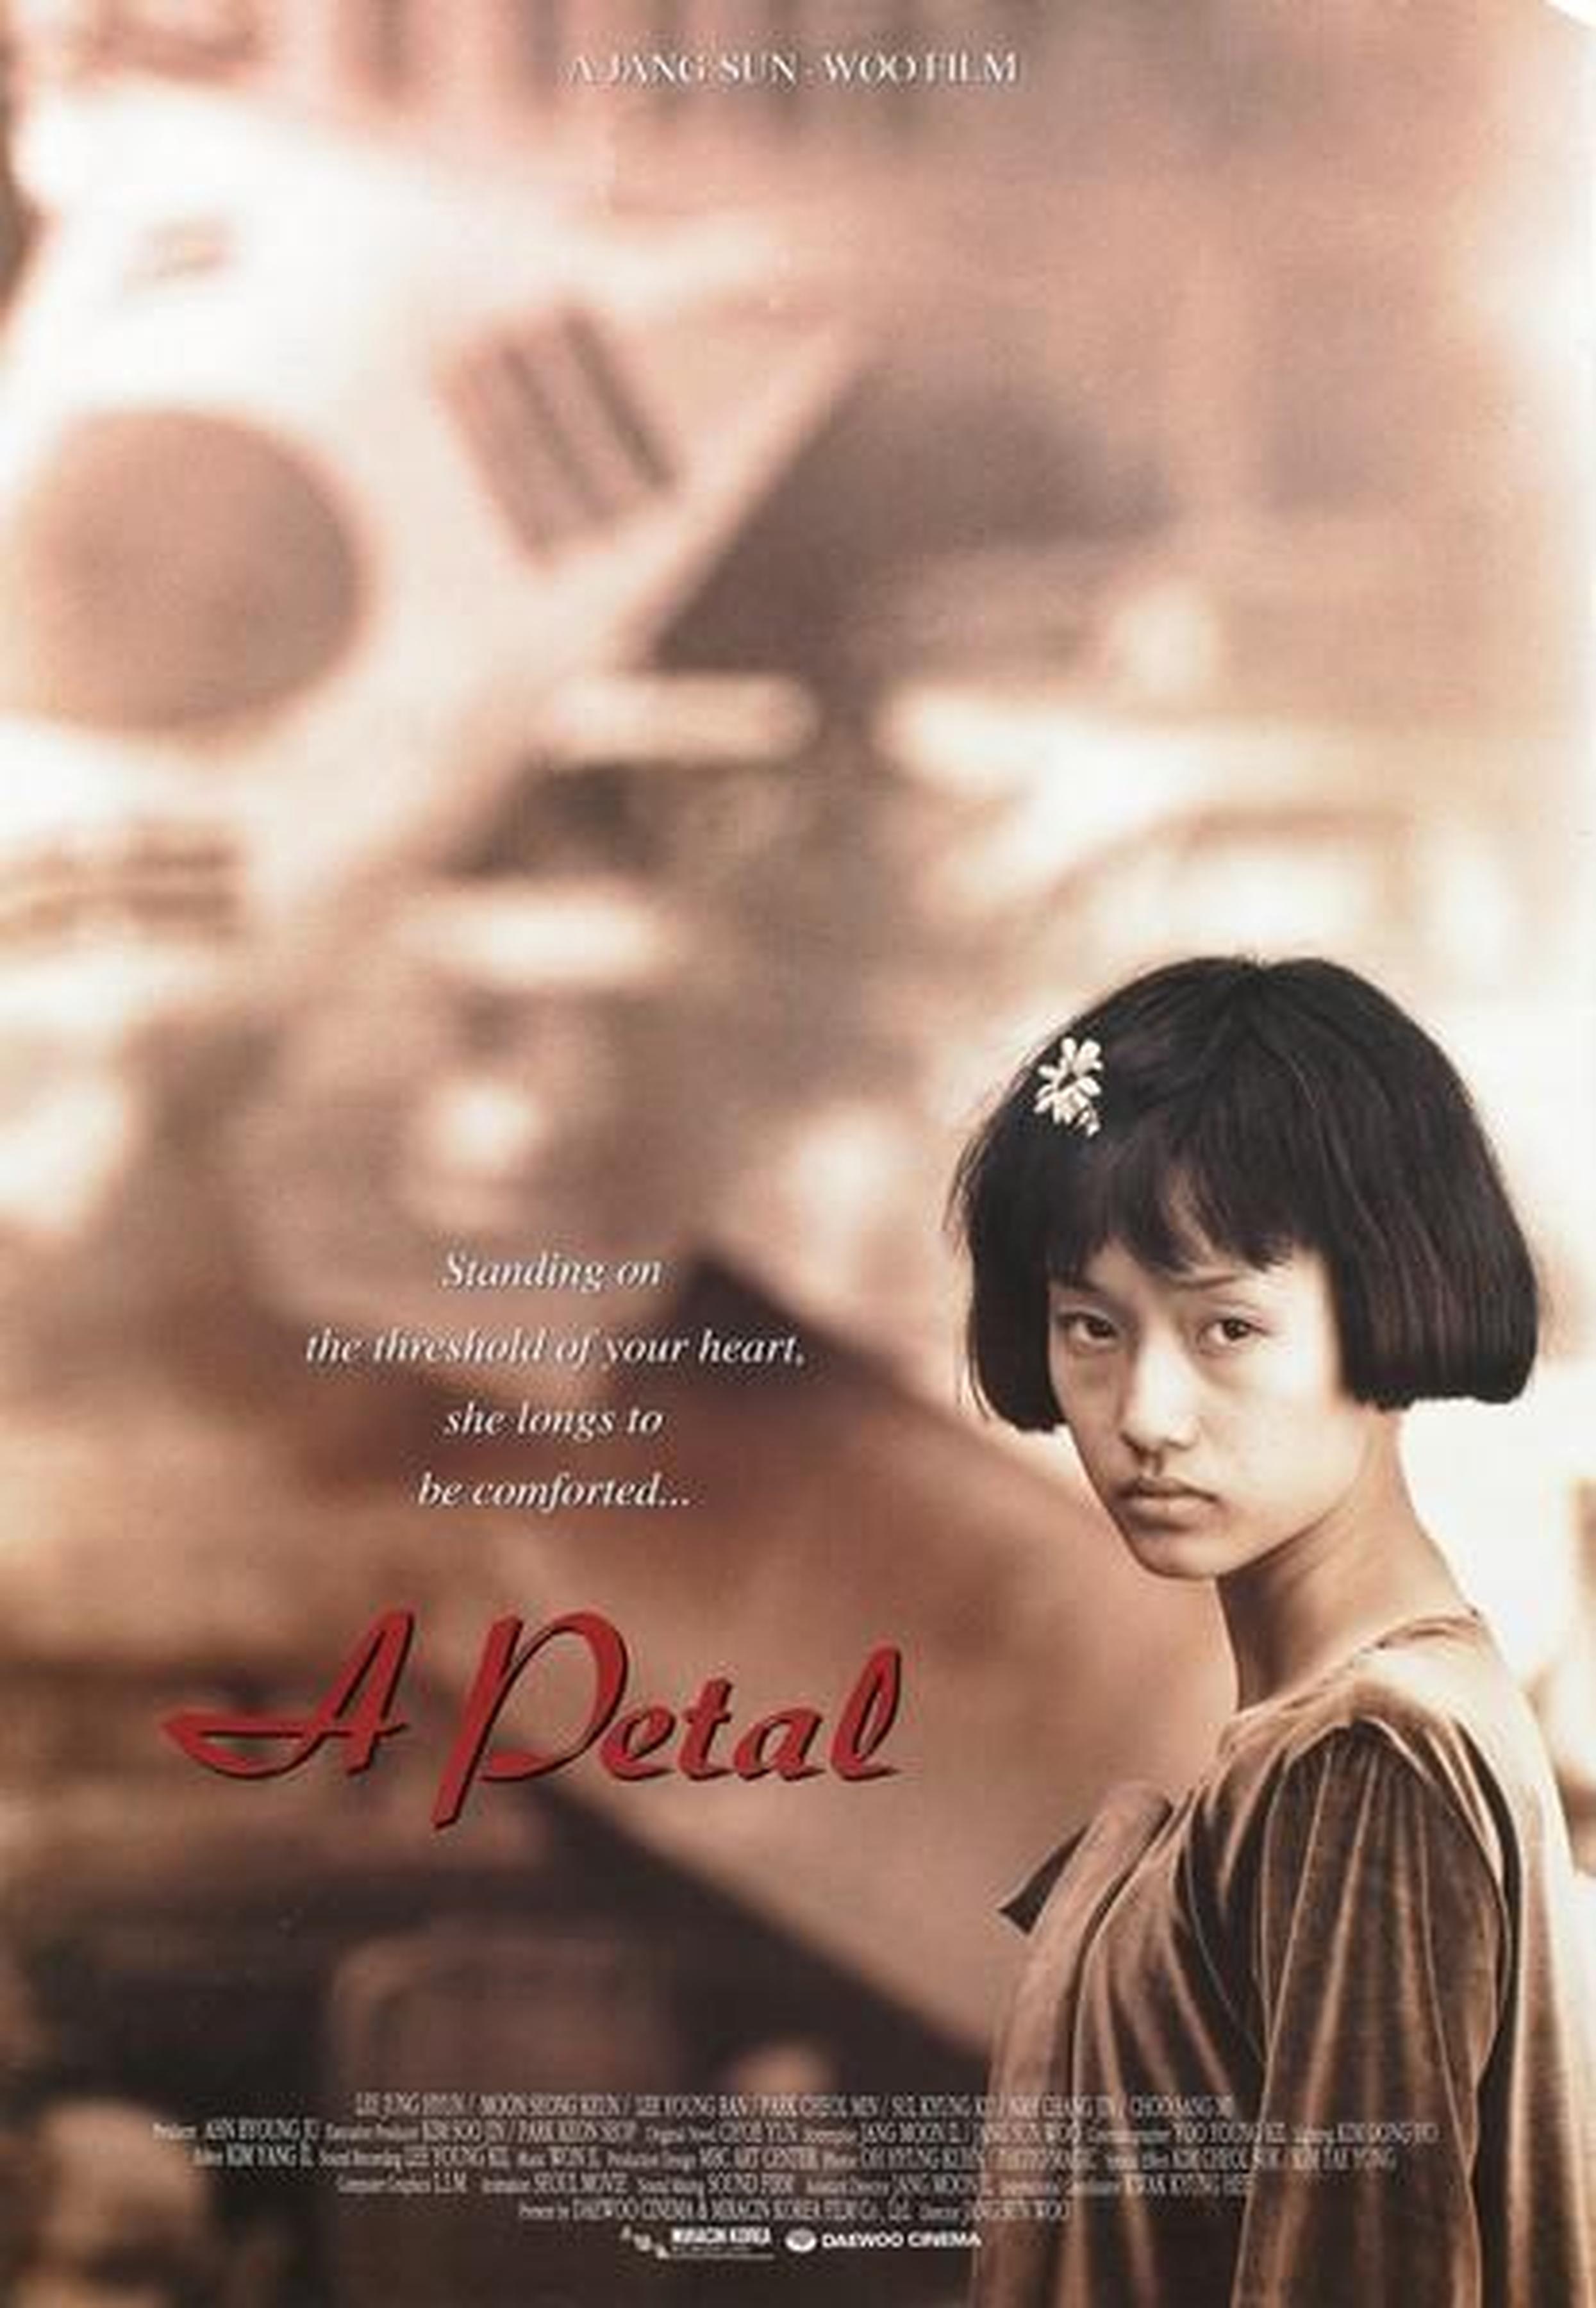 【1990-2000】《花瓣》（1996）导演张善宇。韩国影史上首部触及光州民主化运动的作品。